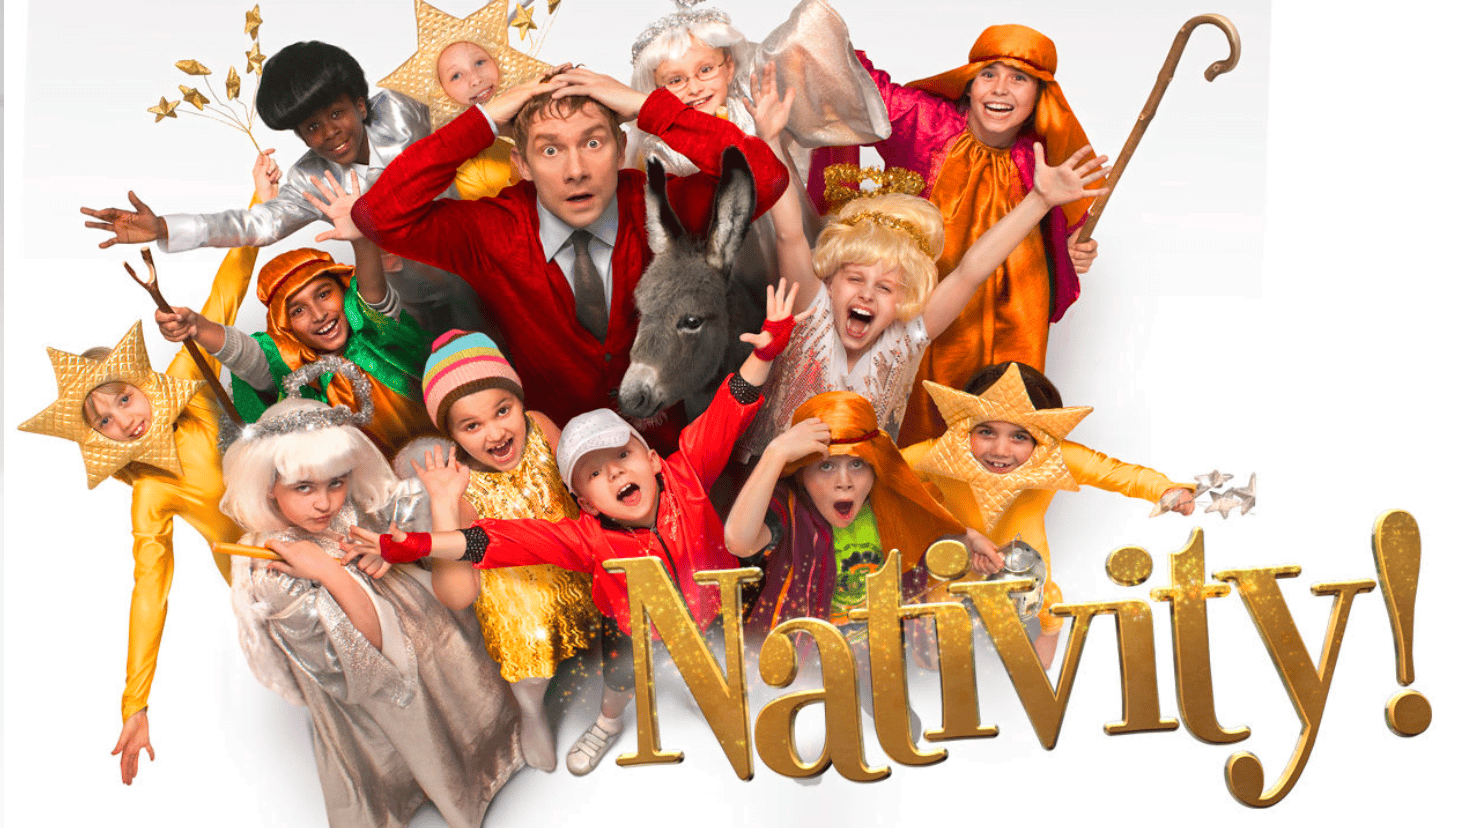 the nativity christmas movie image